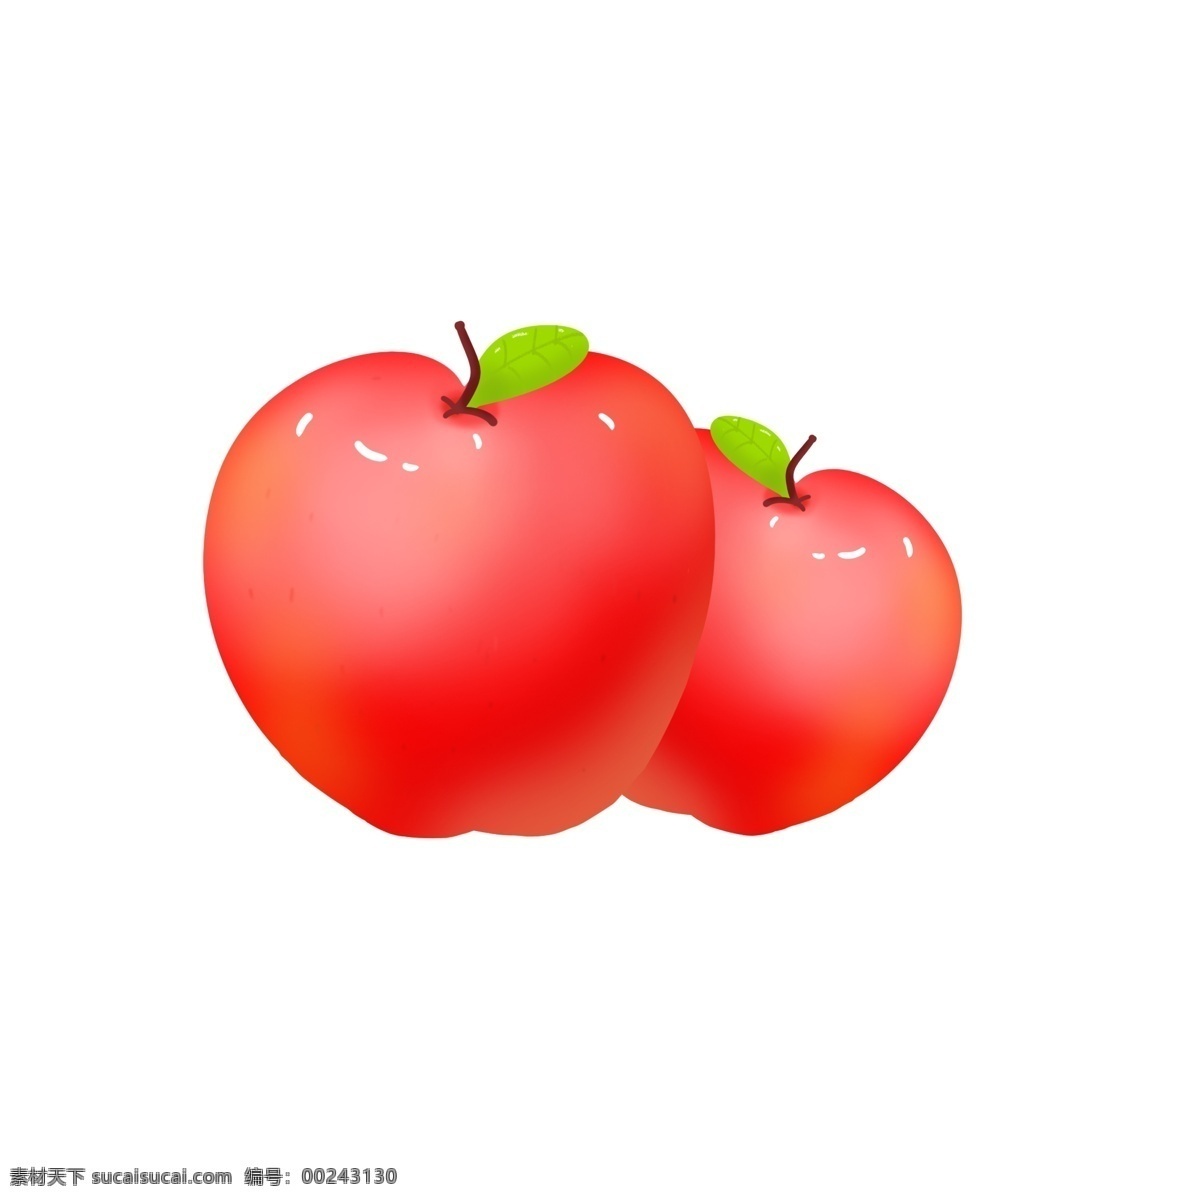 圣诞节 苹果 红色 水果 手绘 插画 商用 果子 绿叶